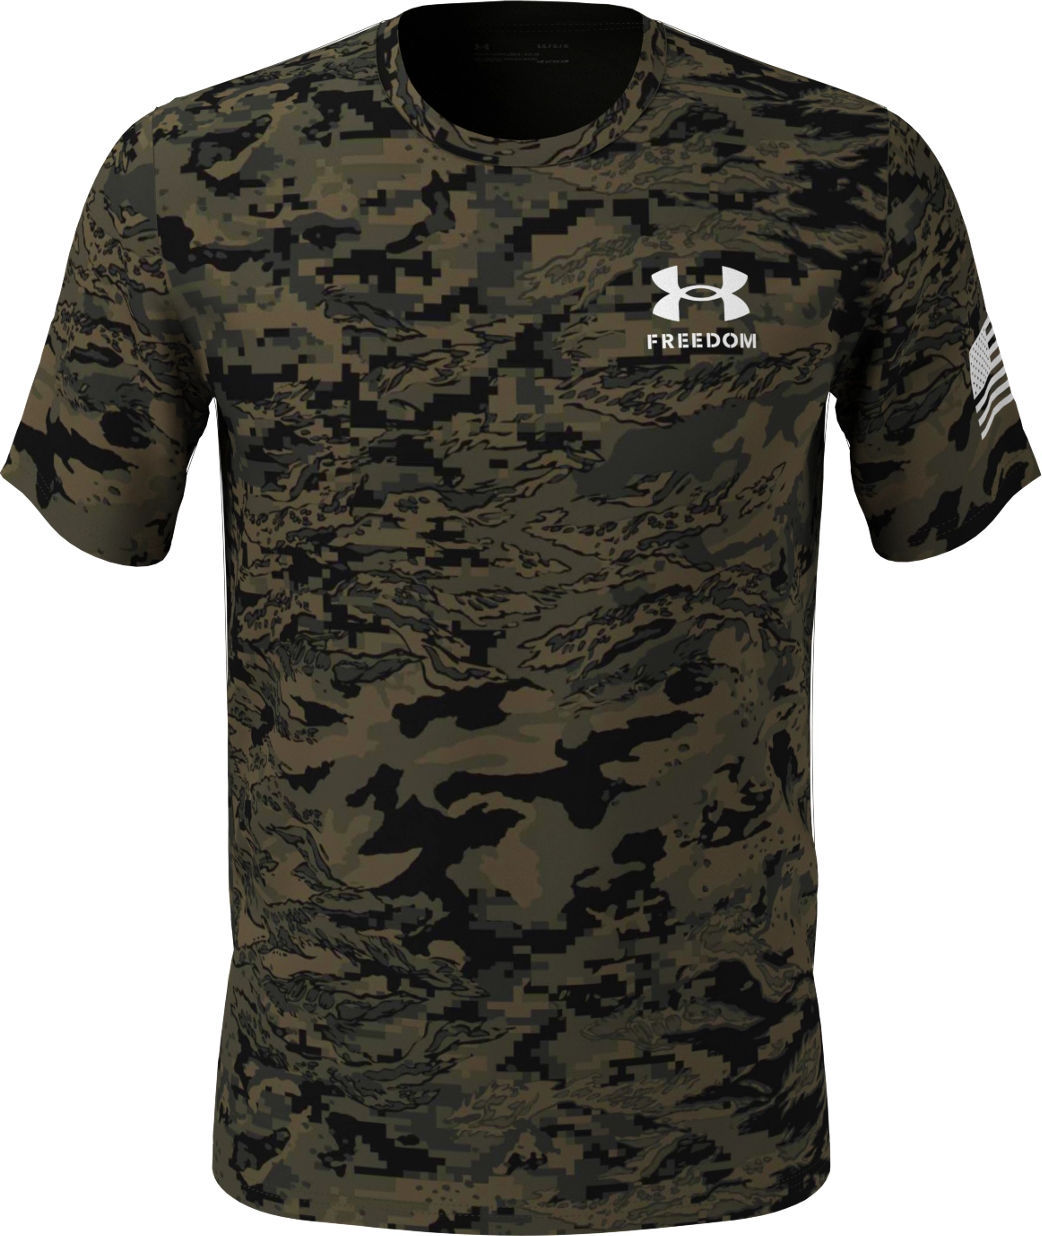 E167443 Under Armour Men's New Freedom Camo T-Shirt 1370822